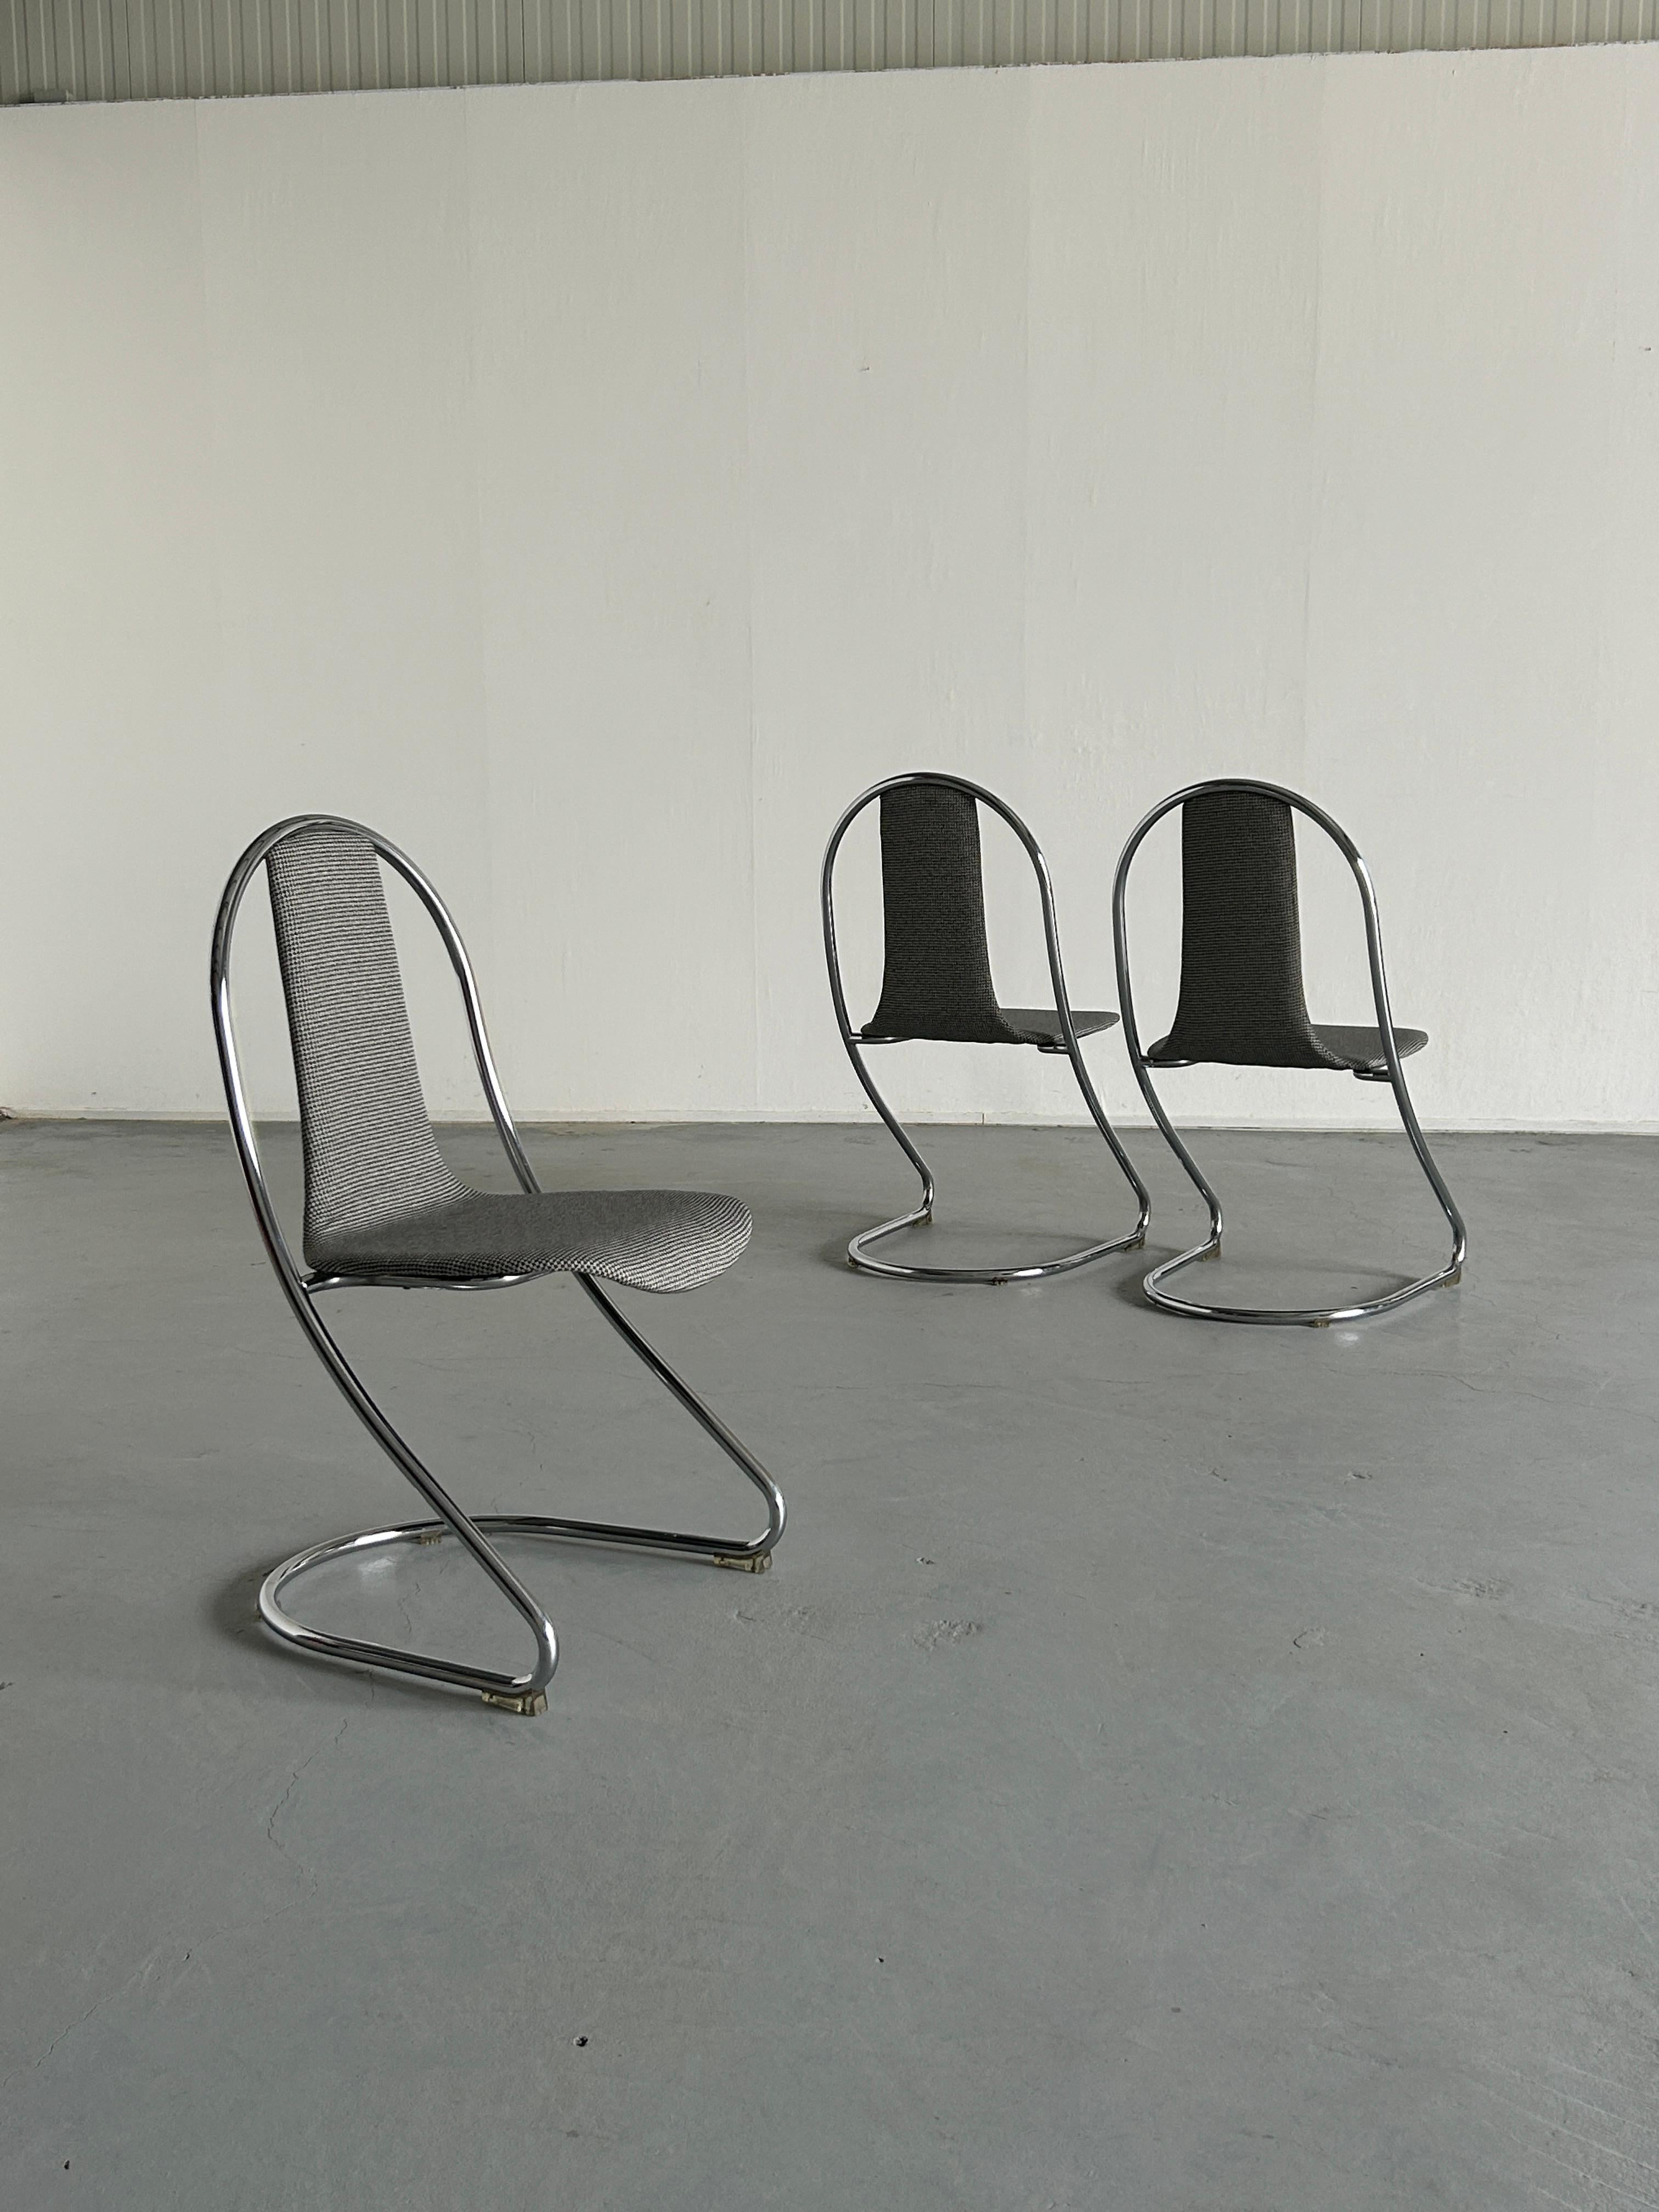 Trois chaises italiennes Space AGE en porte-à-faux, en tube d'acier chromé, assise et dossier rembourrés d'une seule pièce.
Patins de sol en plastique transparent
Production italienne inconnue de la fin des années 1980.
Remeublé dans un nouveau